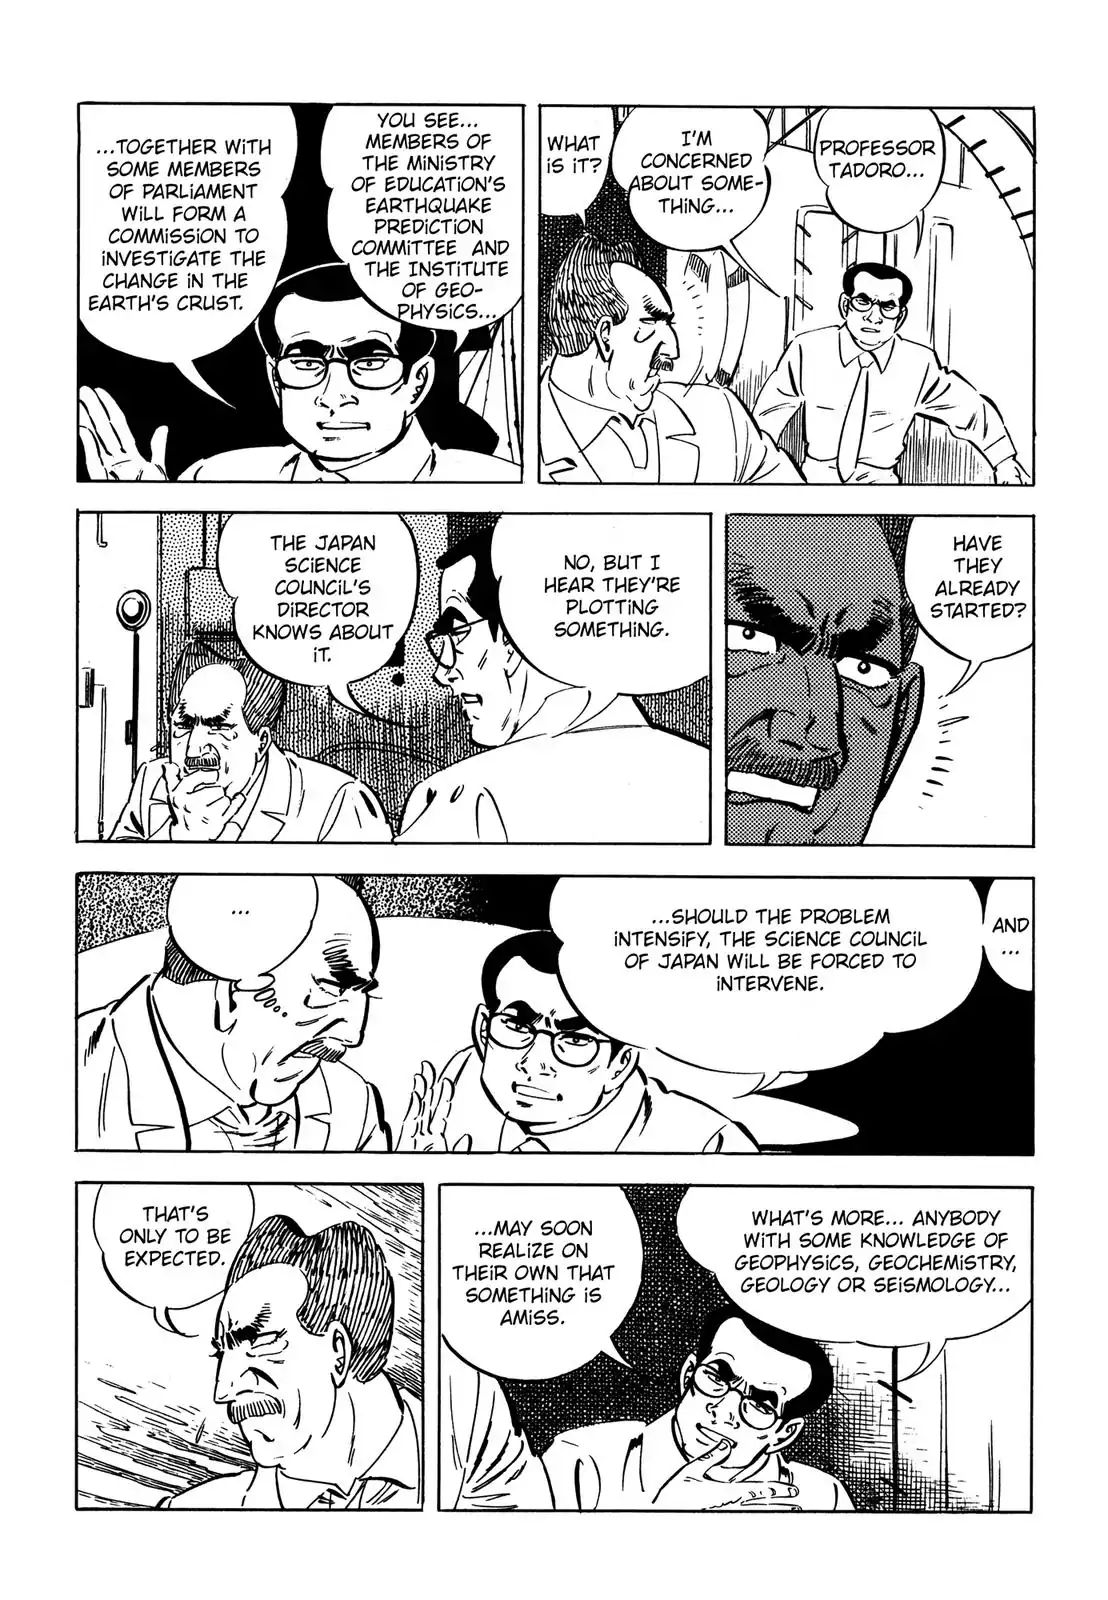 Japan Sinks (Takao Saito) Vol.2 Chapter 4: Government